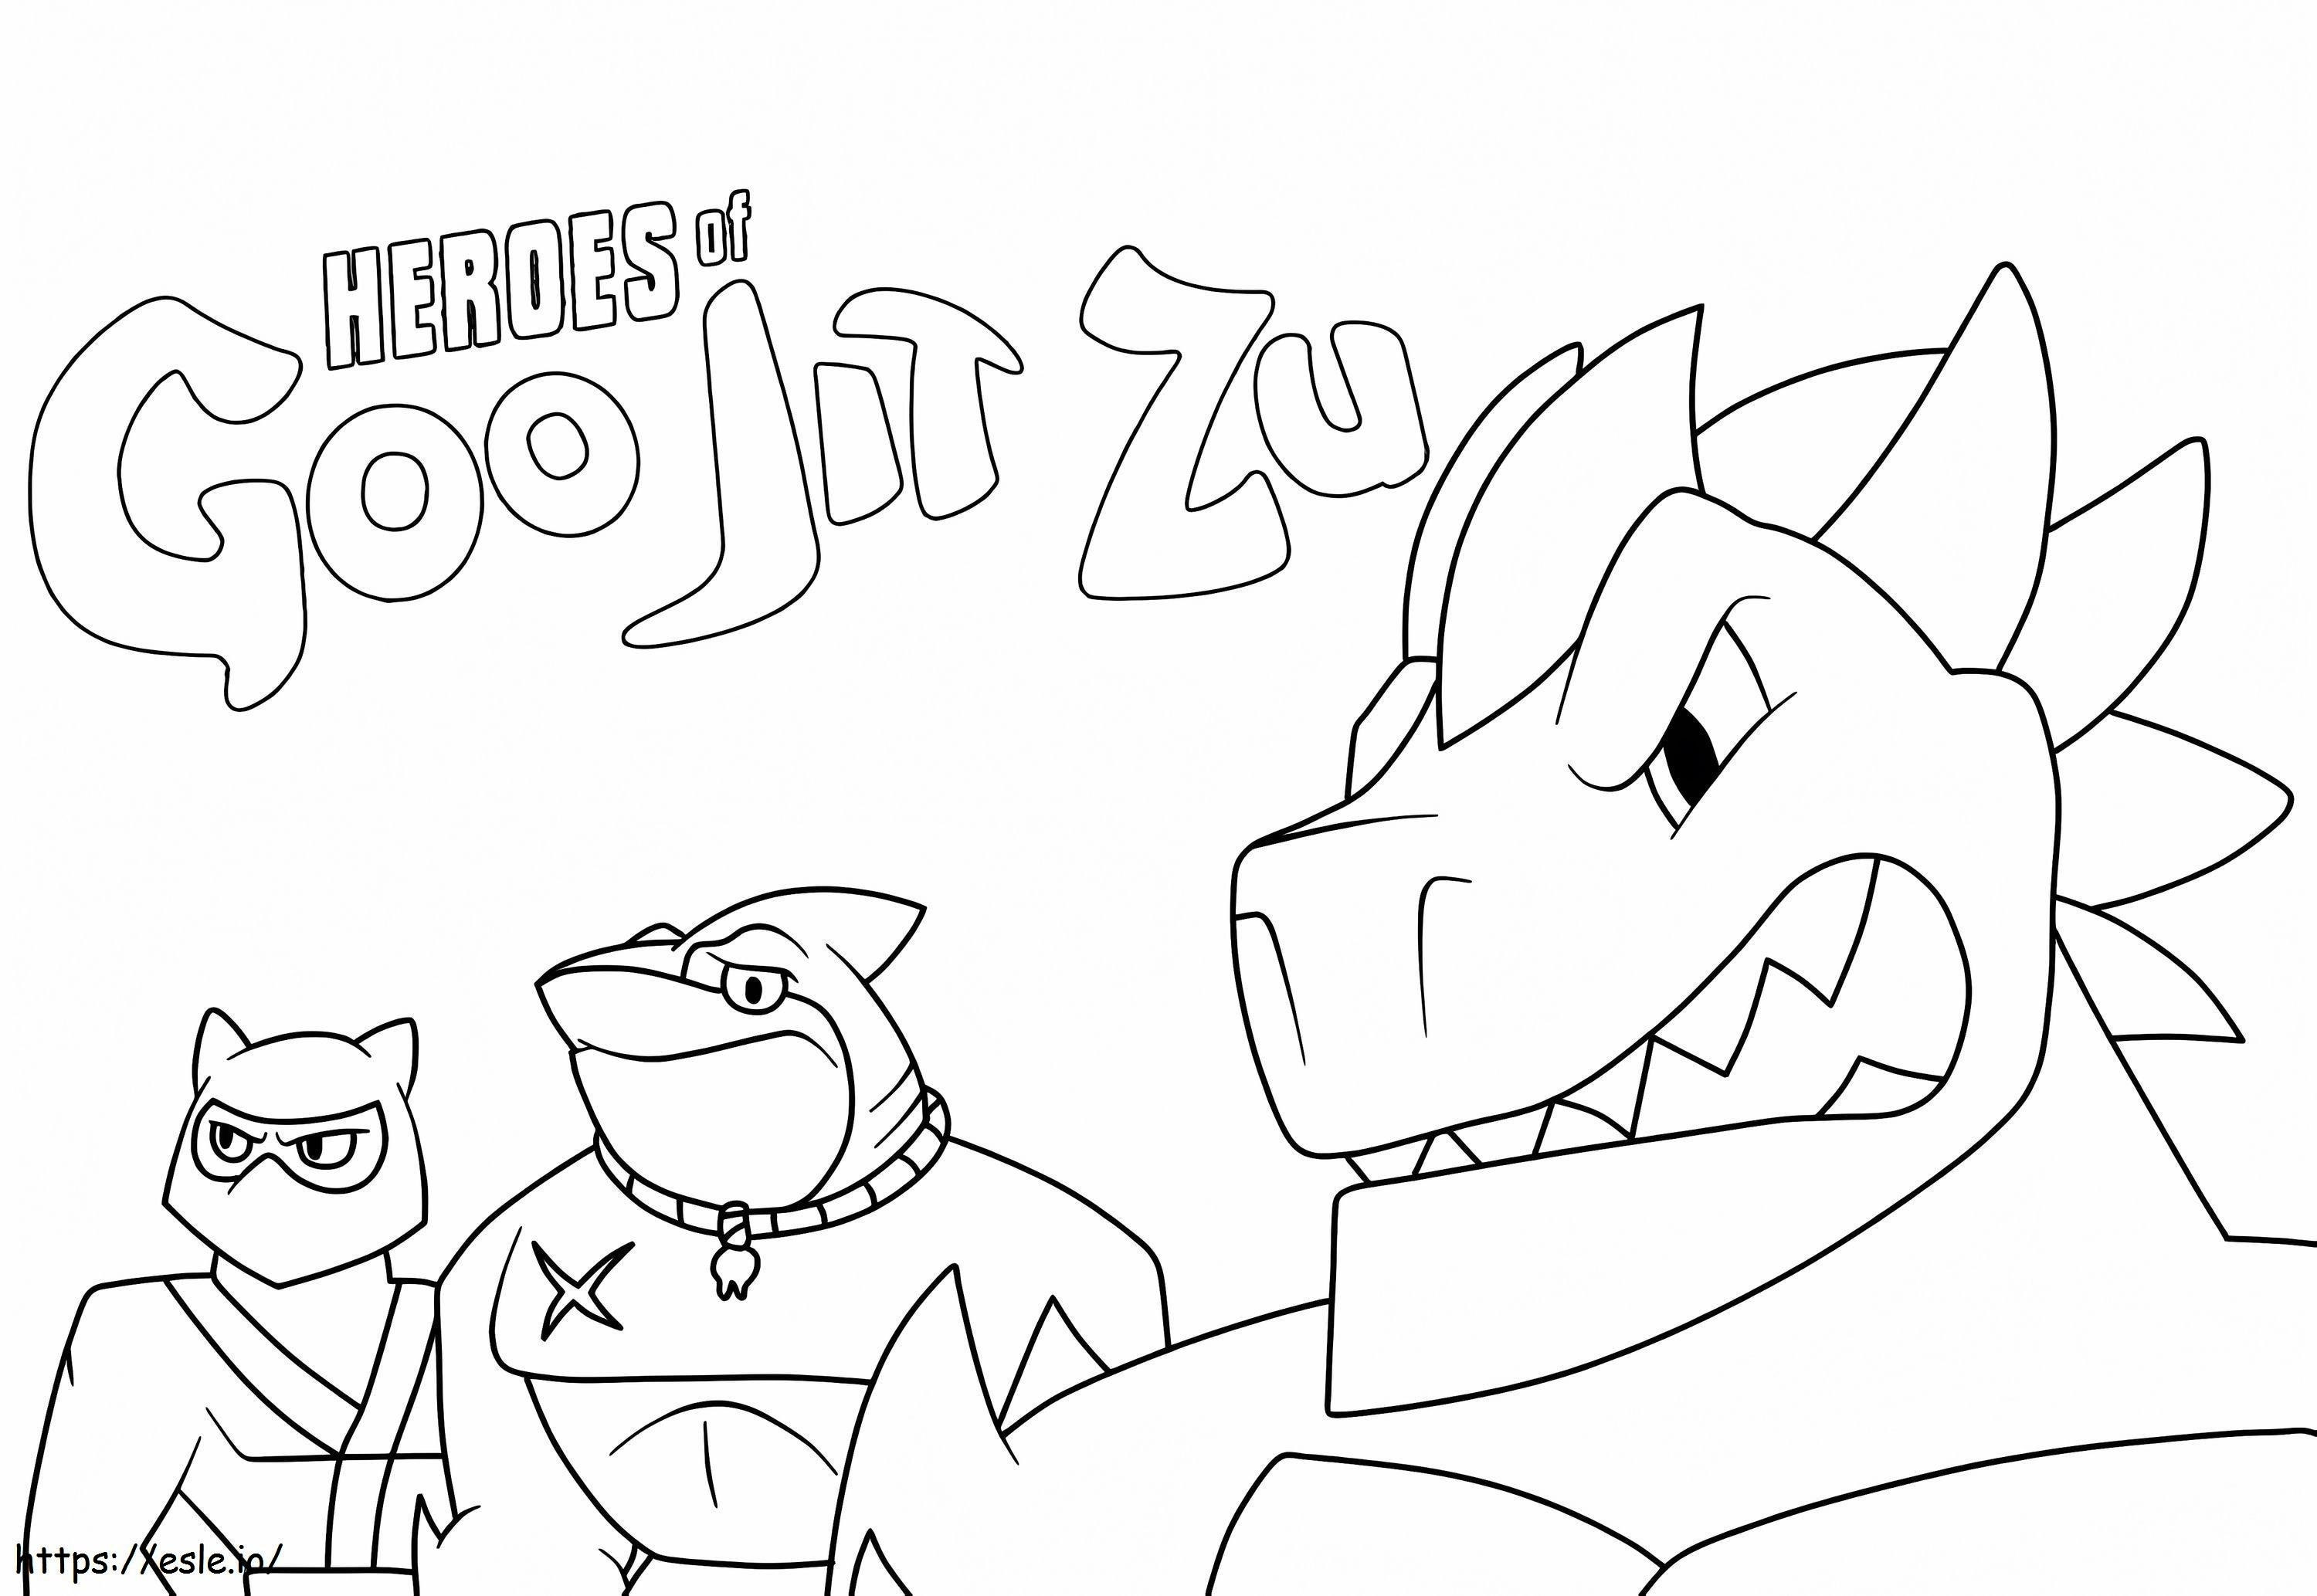 Printable Heroes Of Goo Jit Zu coloring page